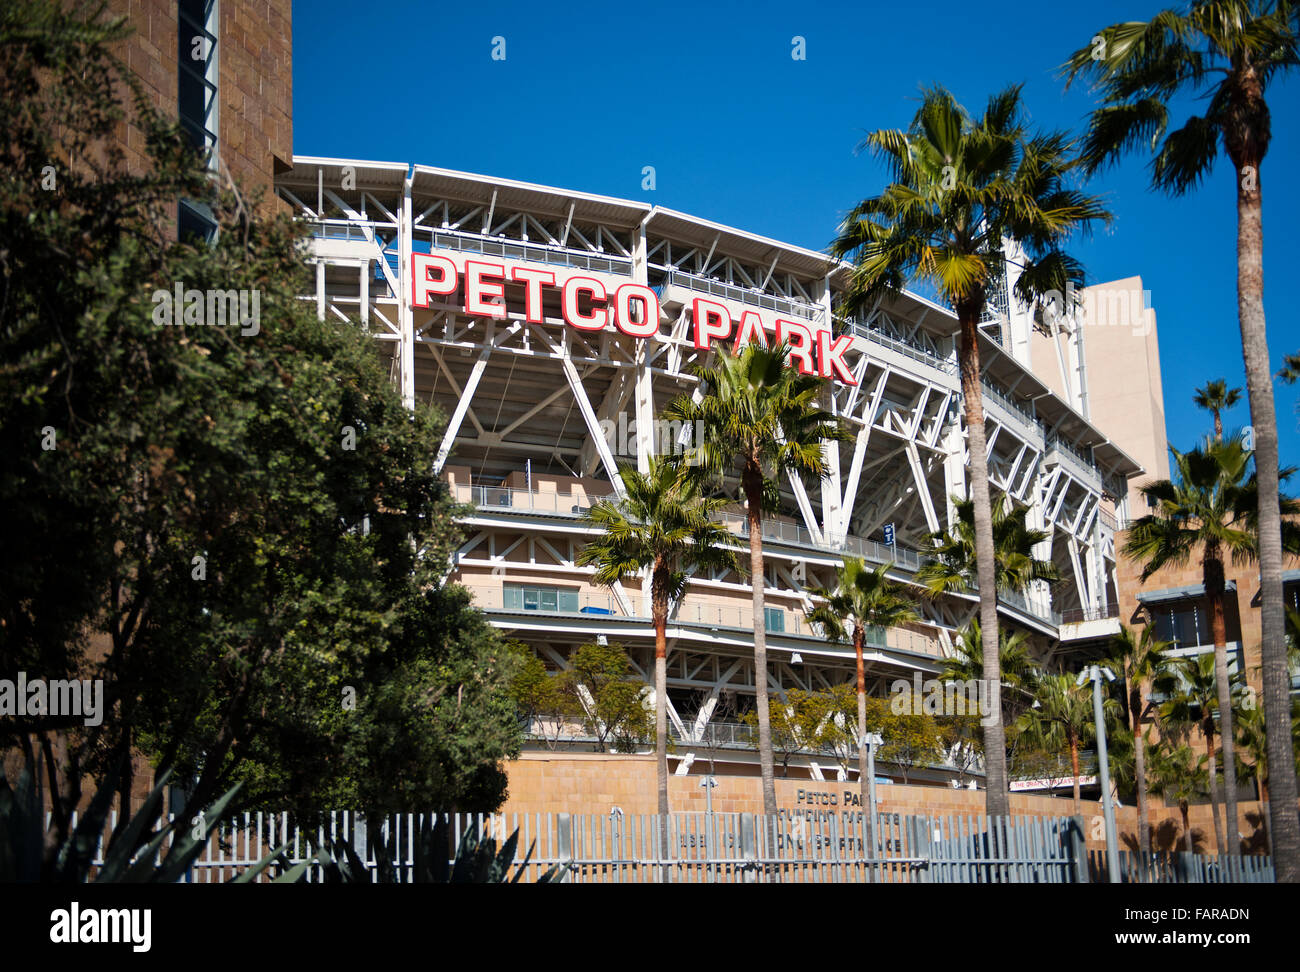 Petco Park Baseball-Stadion in der Innenstadt von San Diego, Kalifornien Stockfoto